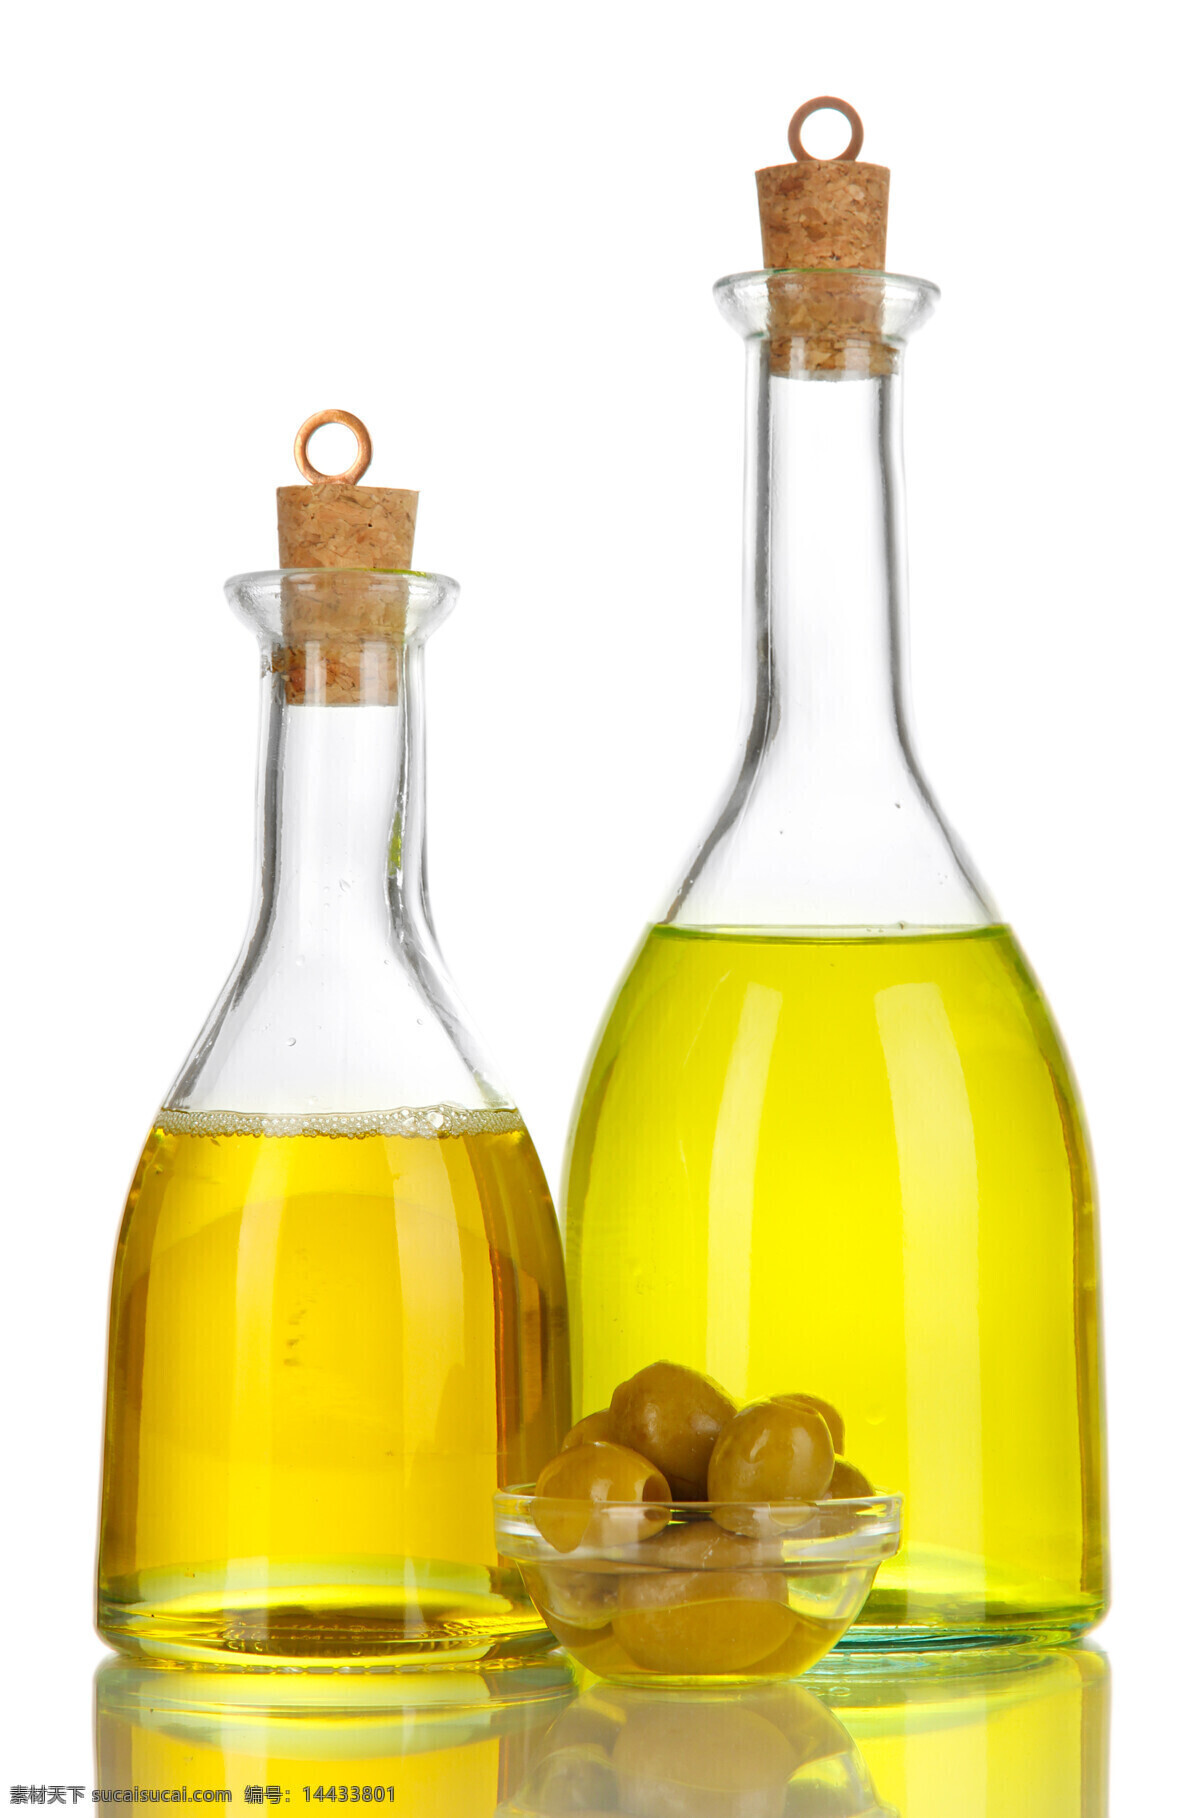 橄榄油 高清 橄榄 玻璃瓶 瓶塞 木塞 瓶子